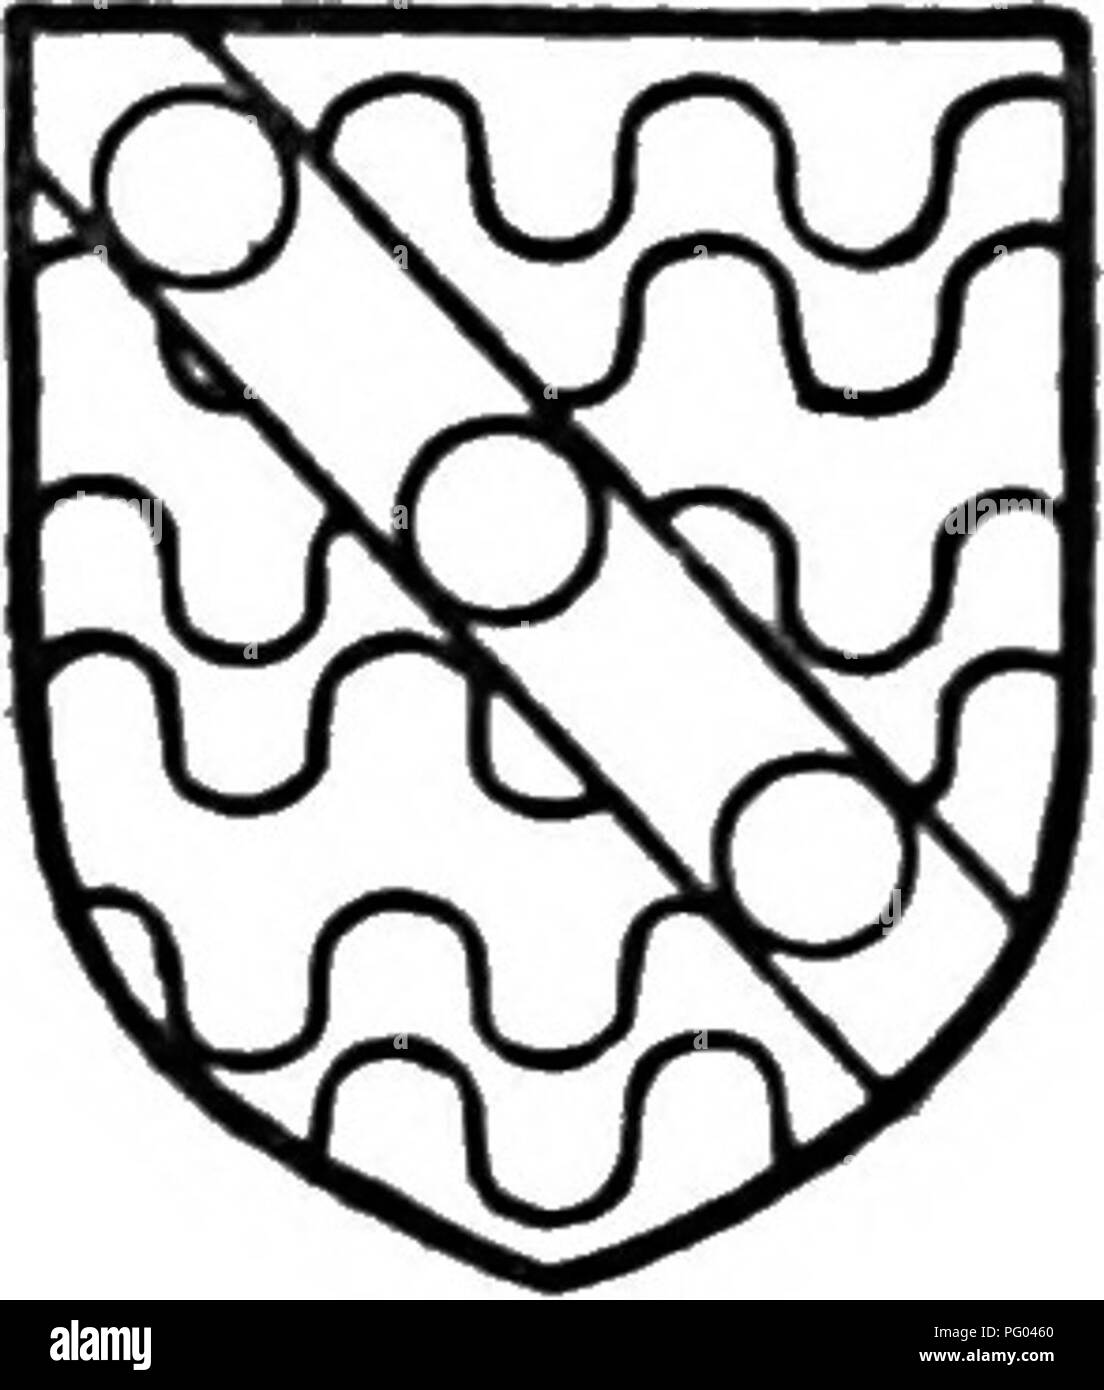 . L'histoire de Victoria le comté d'Hertford. L'histoire naturelle. Une histoire de l'Hertfordshire manor." Humphrey est mort en 1516 et Marger)-, en échange d'autres terres, laissée par sa volonté, se sont installés sur leur WydJial Wellisboume fils aîné Arthur en queue-d'hommes." elle y épousa Thomas Cheyne. En 1522 elle quitclaimed Wyddial à Robert Dormer," à qui Arthur Wellisbourne vendu ses intérêts dans le manoir." En 1528, Robert Dormer et son épouse Joan con- veyed le manoir de Wyddial à Canon George et John Gill." George Canon construit la chapelle de saint Georges en la paroisse ch Banque D'Images